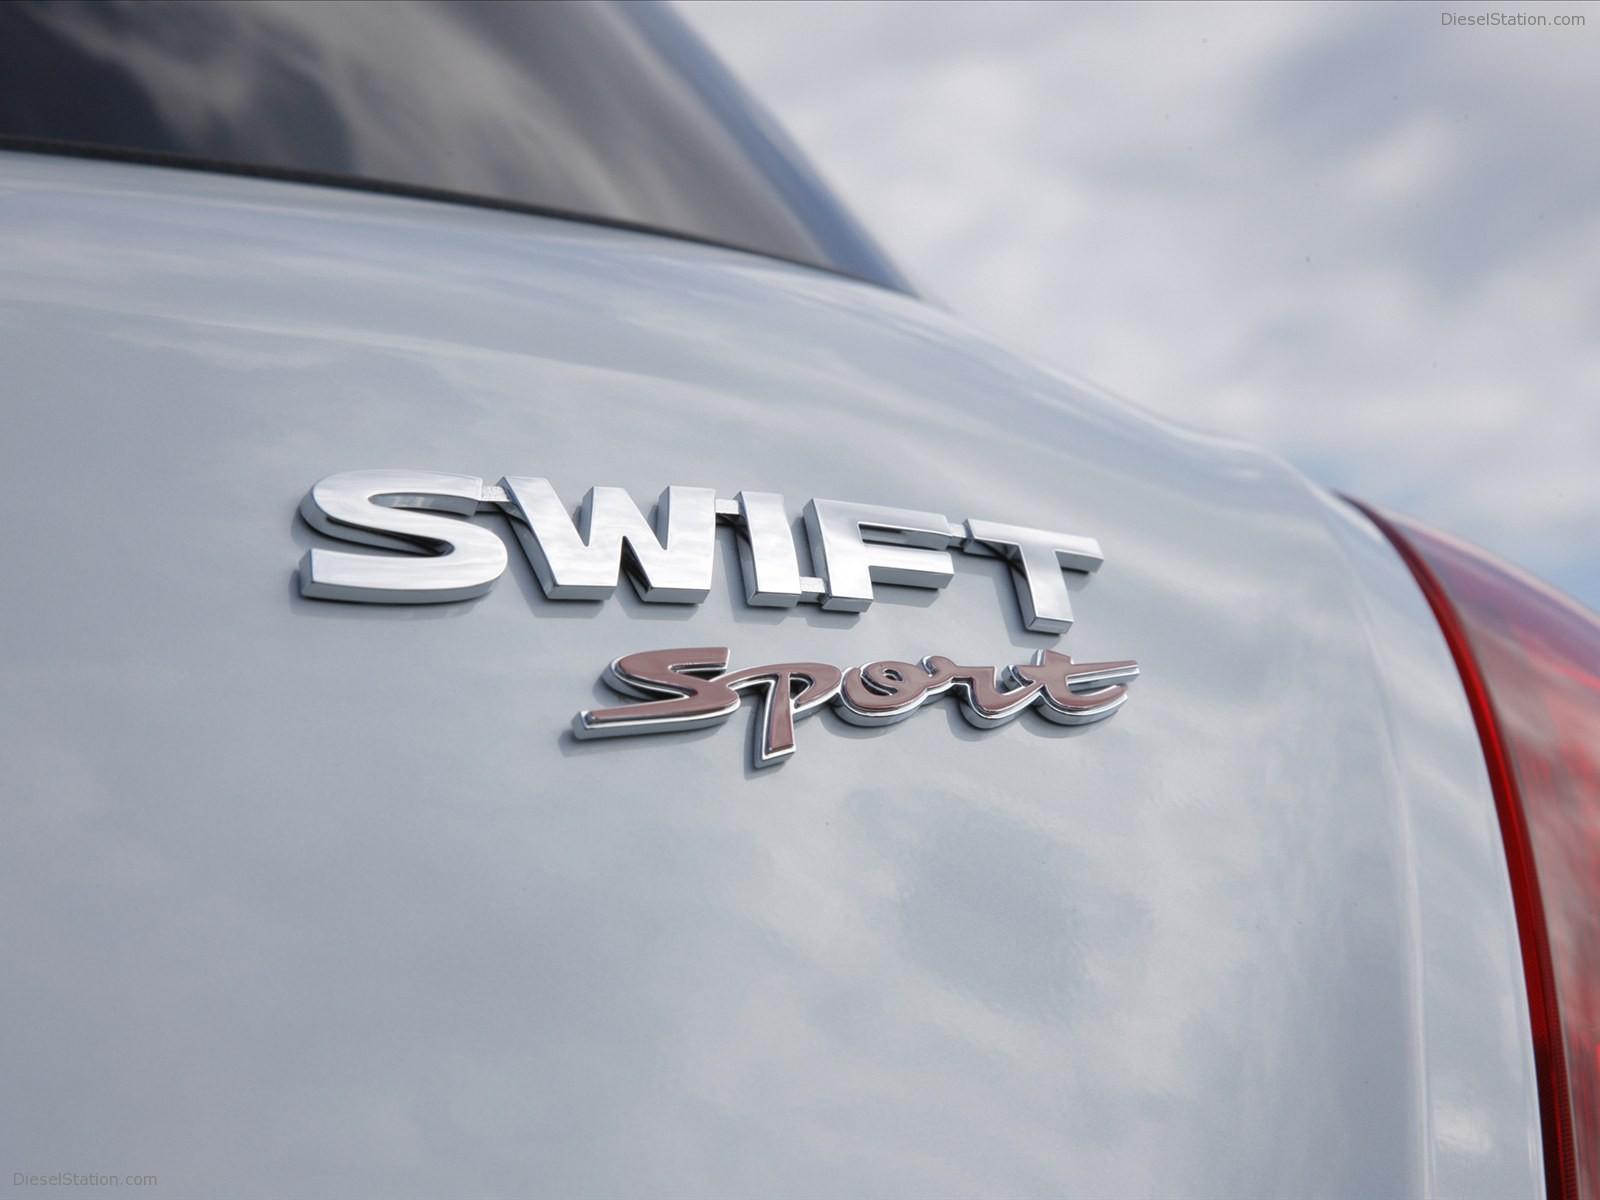 Suzuki Swift Sport 2012 Exotic Car Wallpaper of 31, Diesel Station